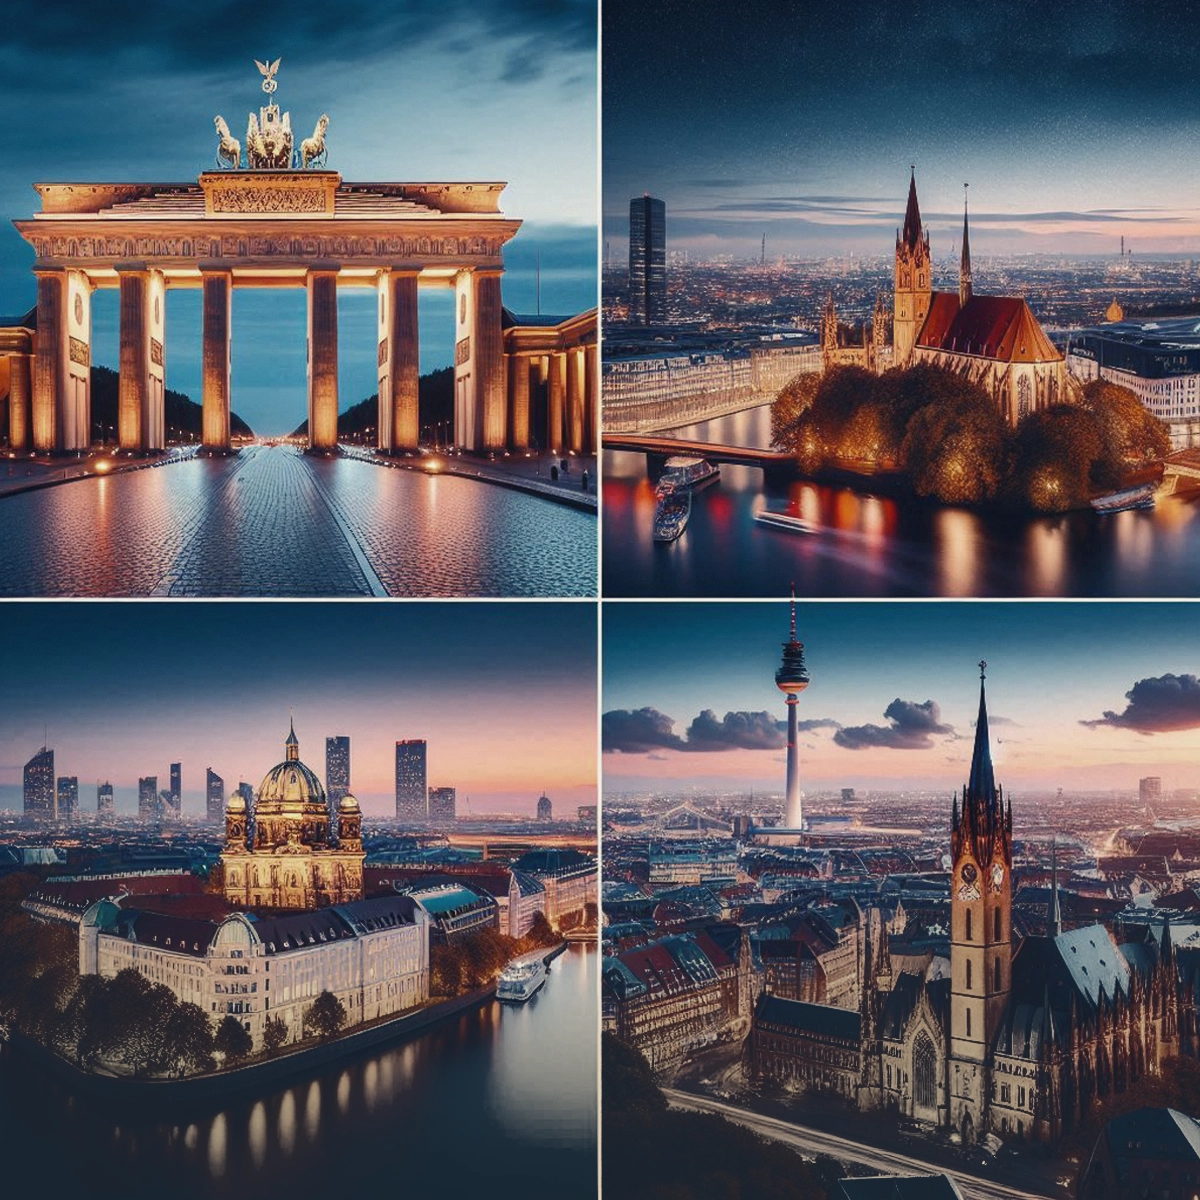 بهترین شهرهای آلمان برای پزشکان